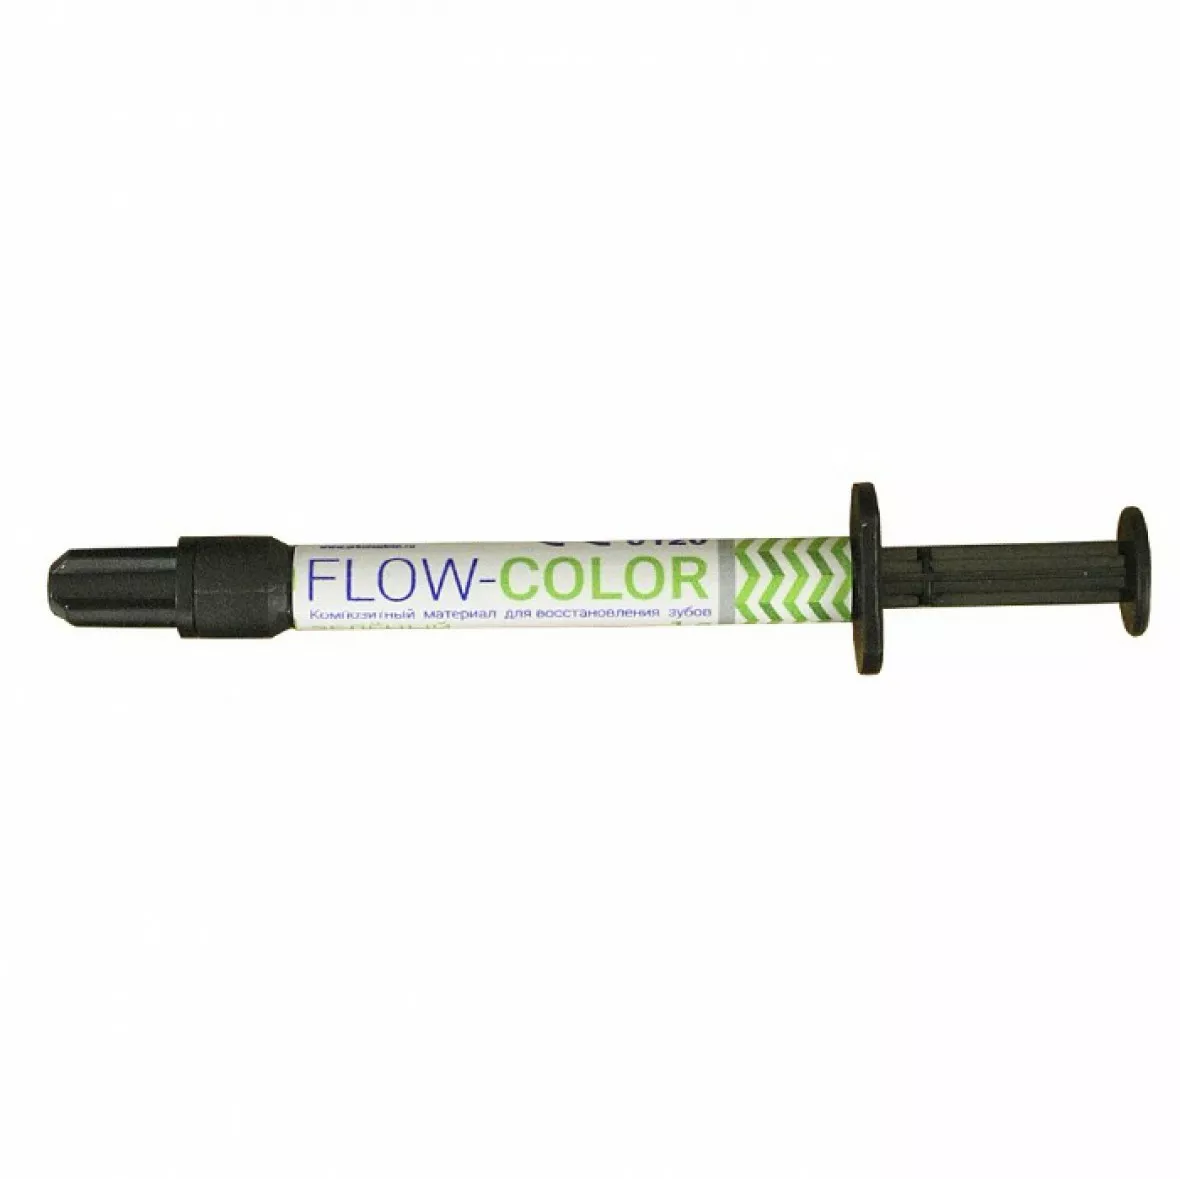 FLOW-COLOR - цветной композит, Зеленый